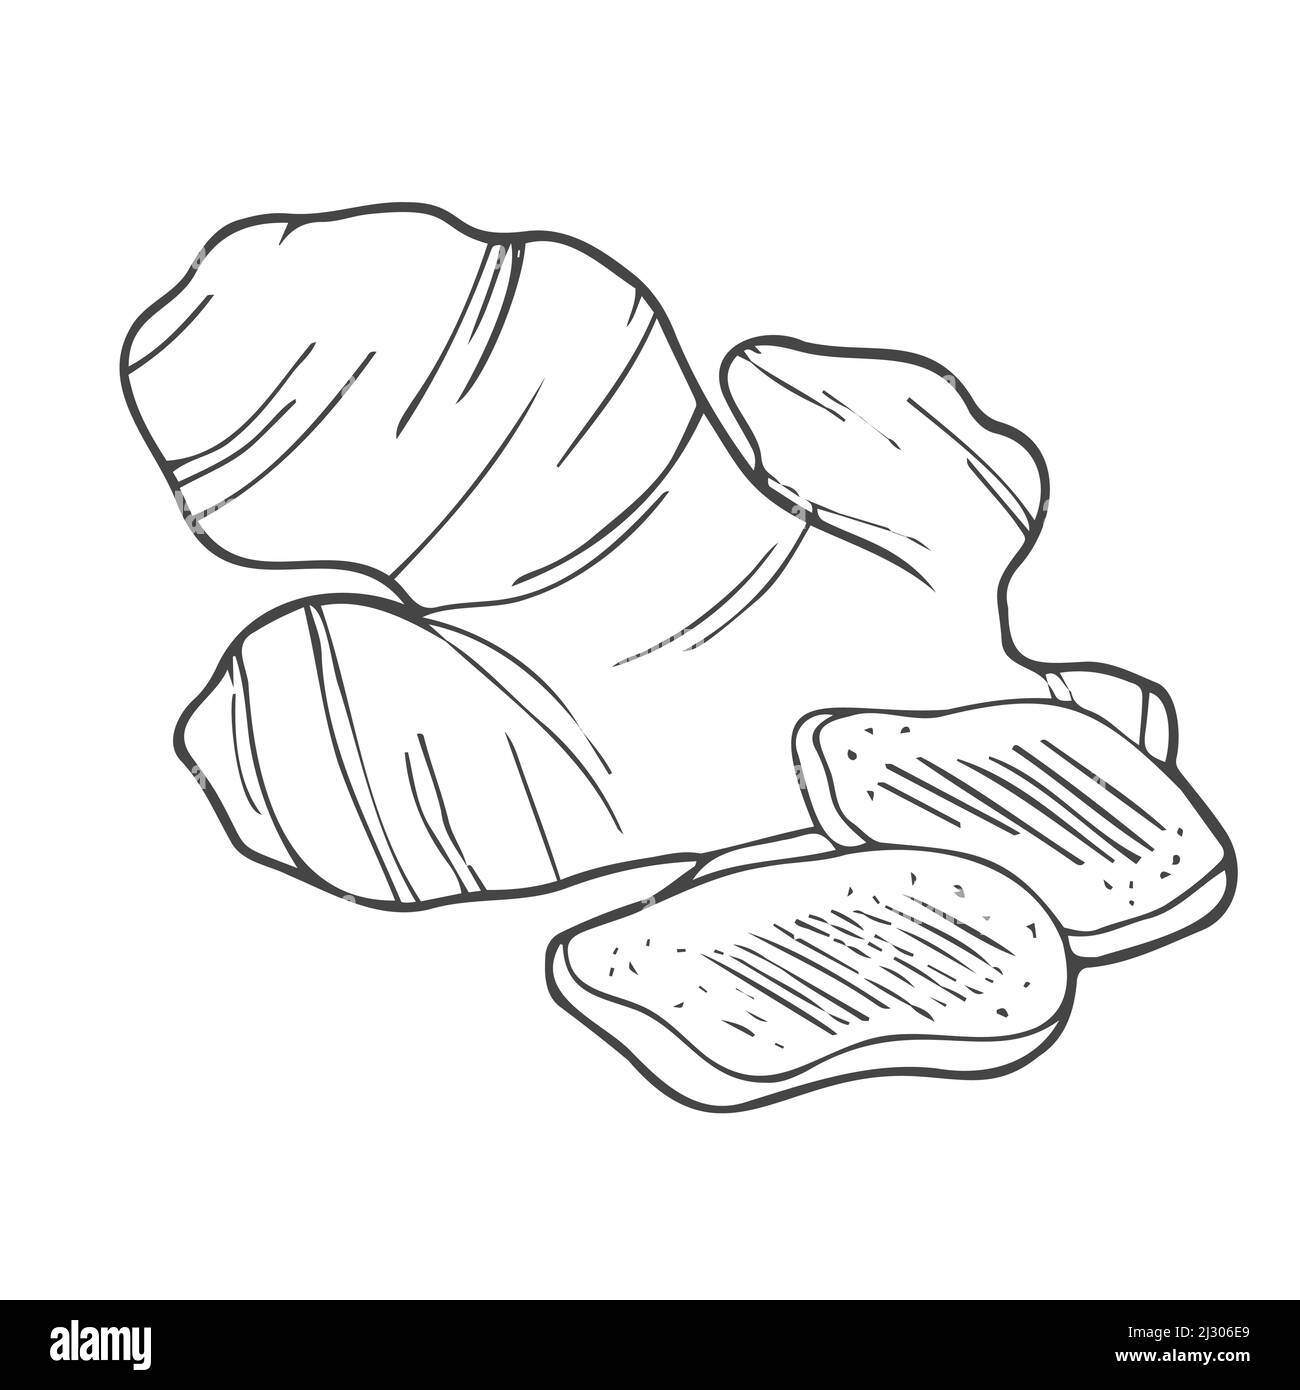 Ingwerwurzelpflanze. Handgezeichnete Skizzenvektordarstellung isoliert auf Weiß. Würzige Kräuter. Ingwer Doodle Design Kochzutat für Lebensmittel. Stock Vektor